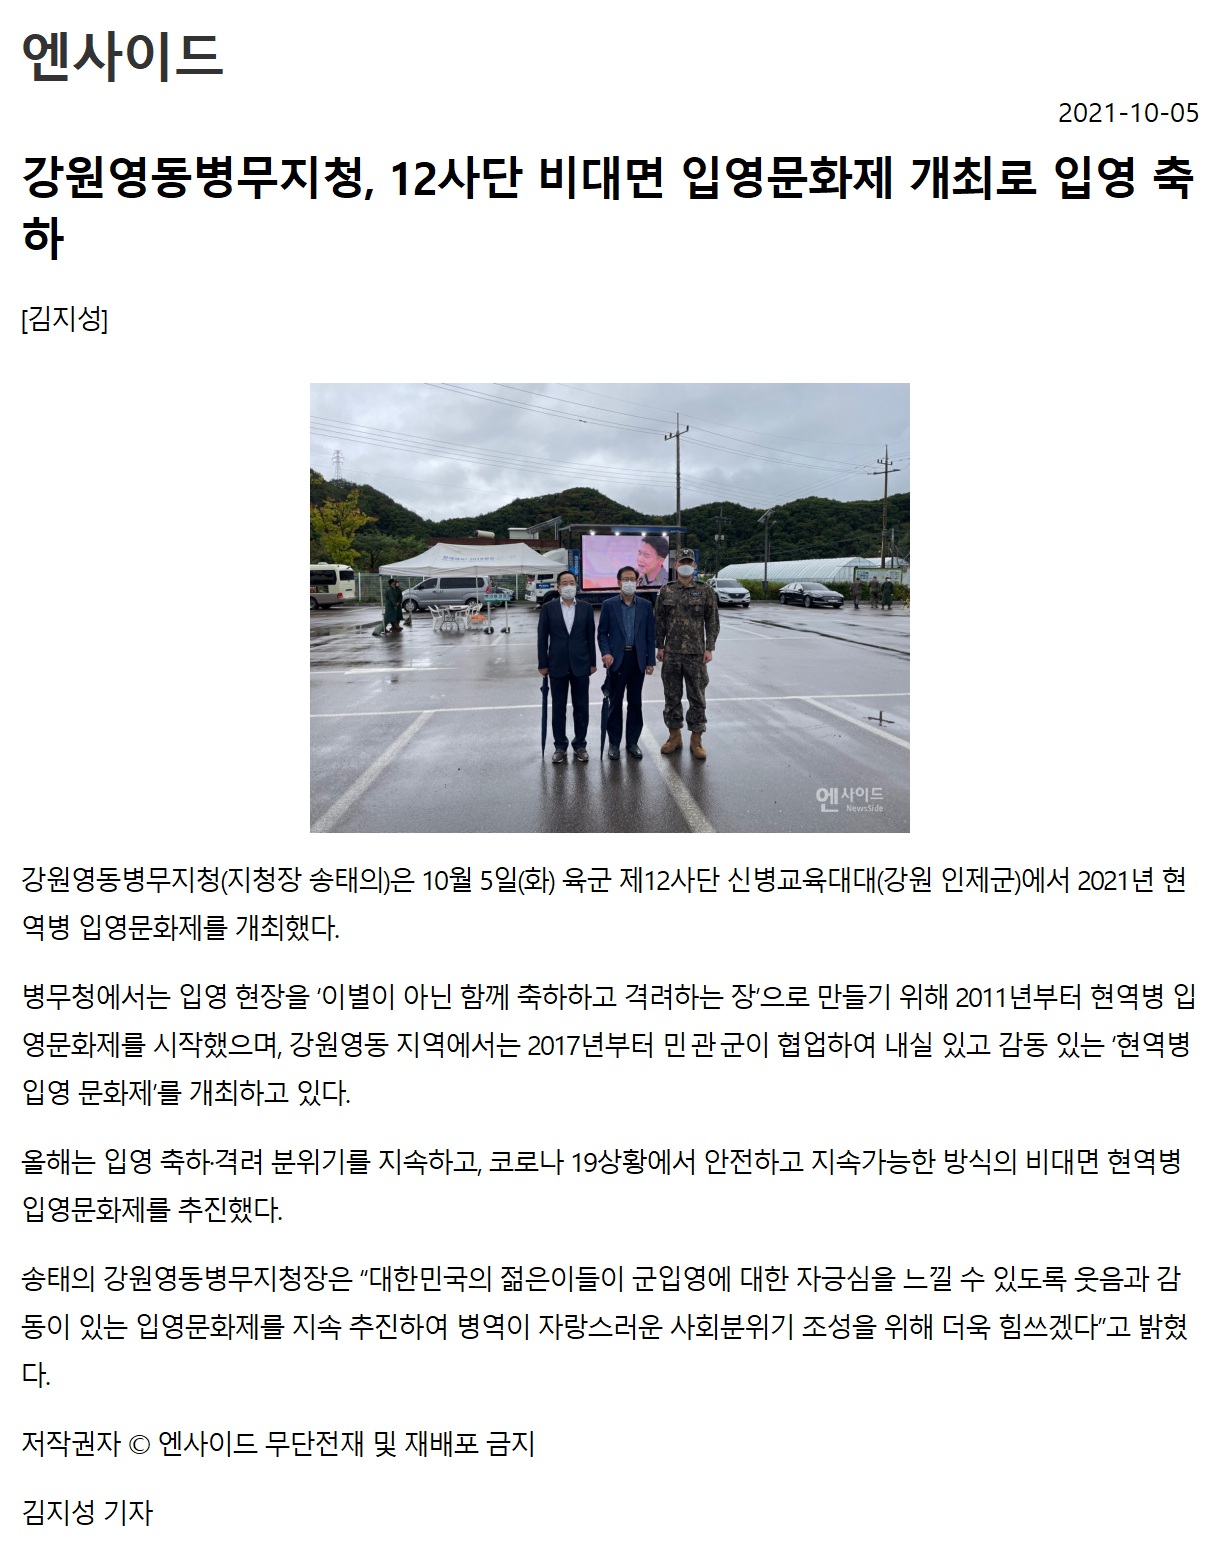 강원영동병무지청, 12사단 현역병 입영문화제 개최1